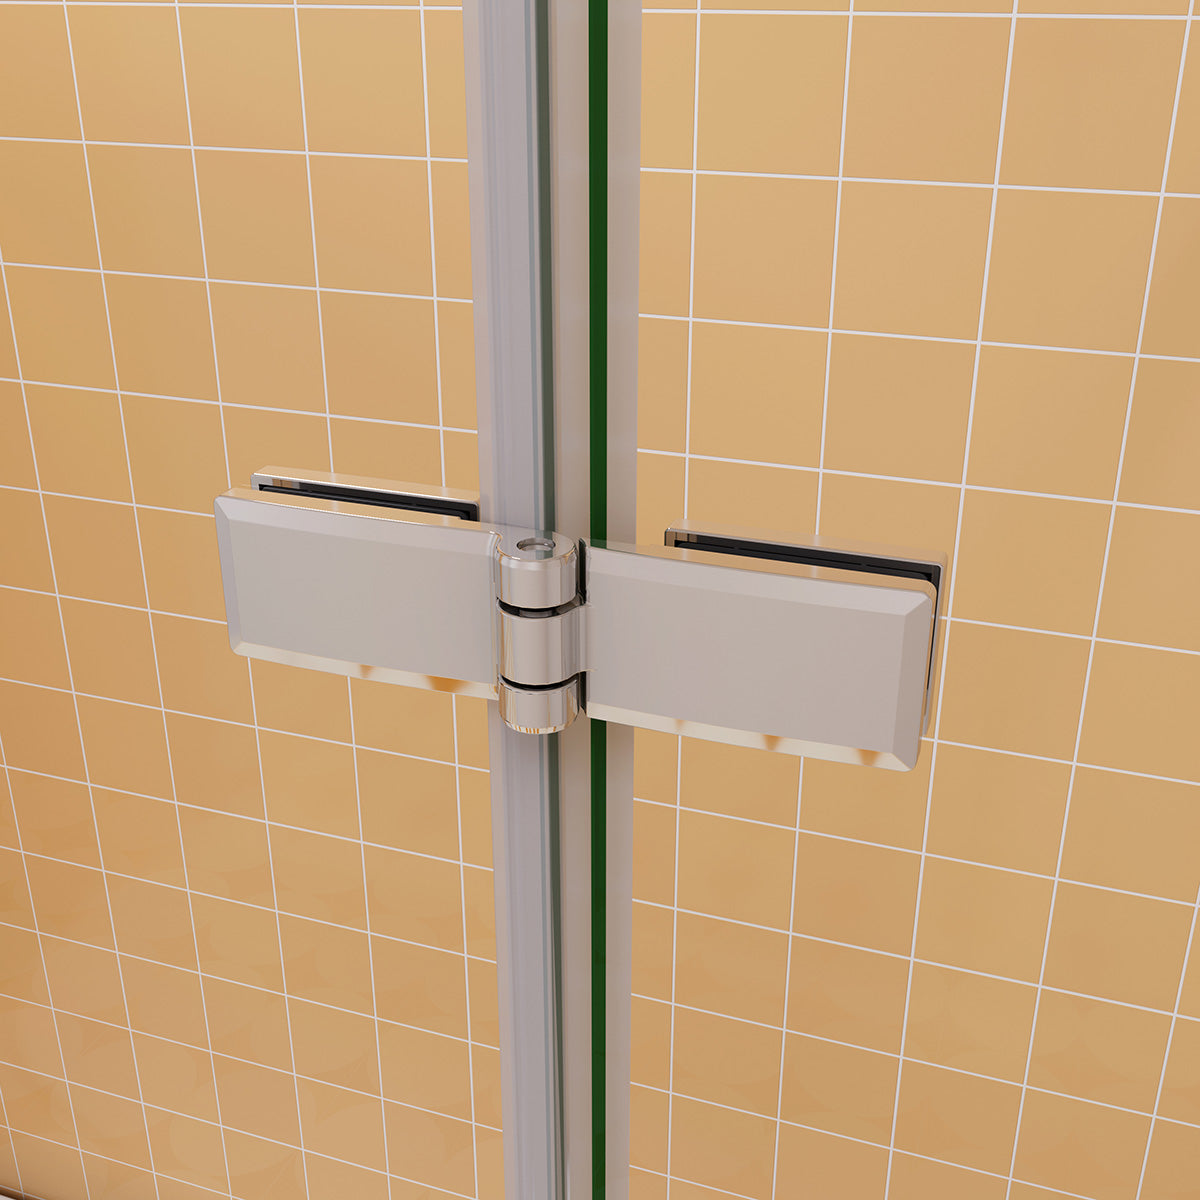 Badewannenaufsatz Duschkabine 110 cm Tiefe 70 cm Seitenwand Dusche Duschabtrennung